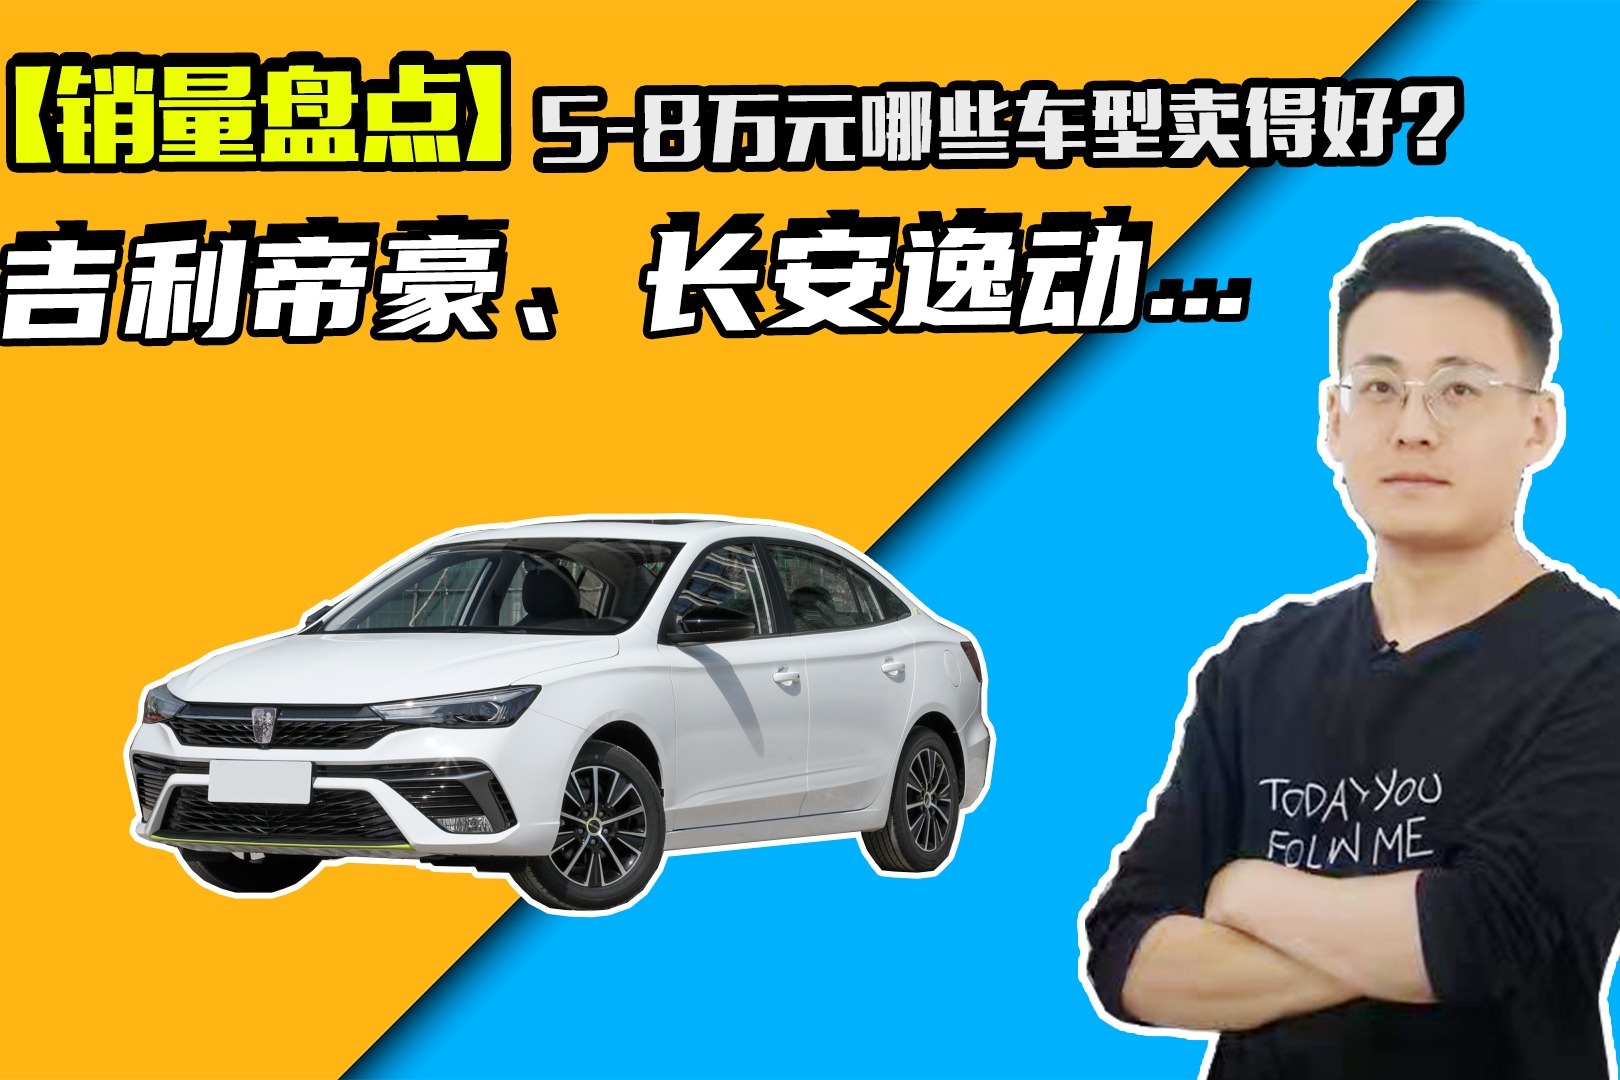 2019微型车排行榜_预售价5 8万元 北京现代全新瑞纳即将上市(2)_排行榜